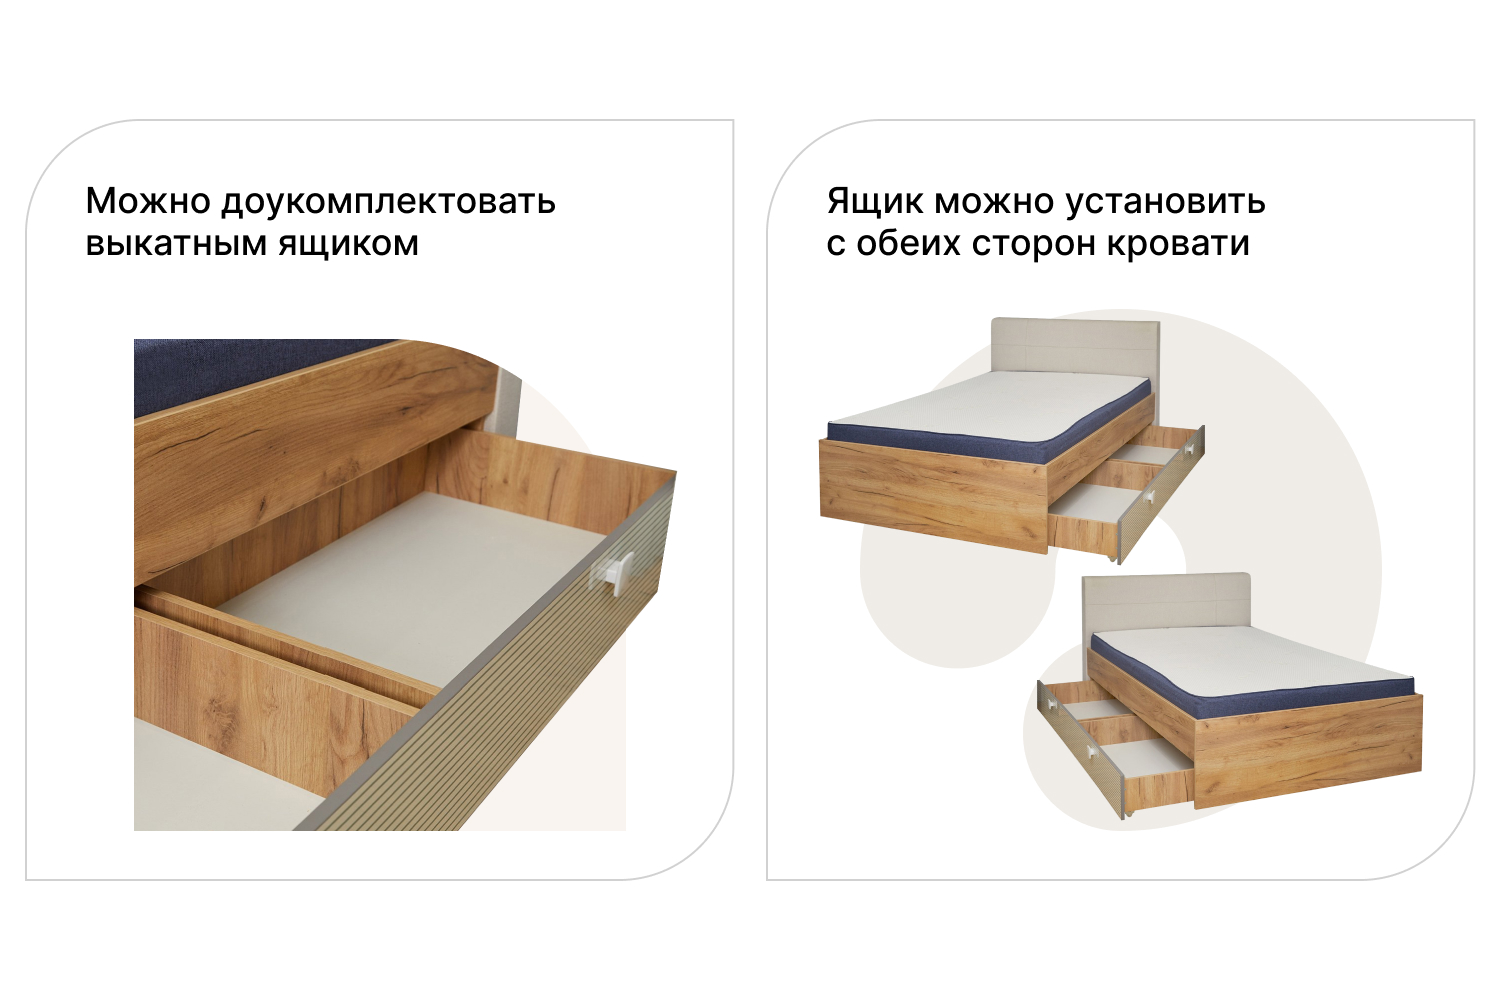 Кровать модекс 2 инструкция по сборке